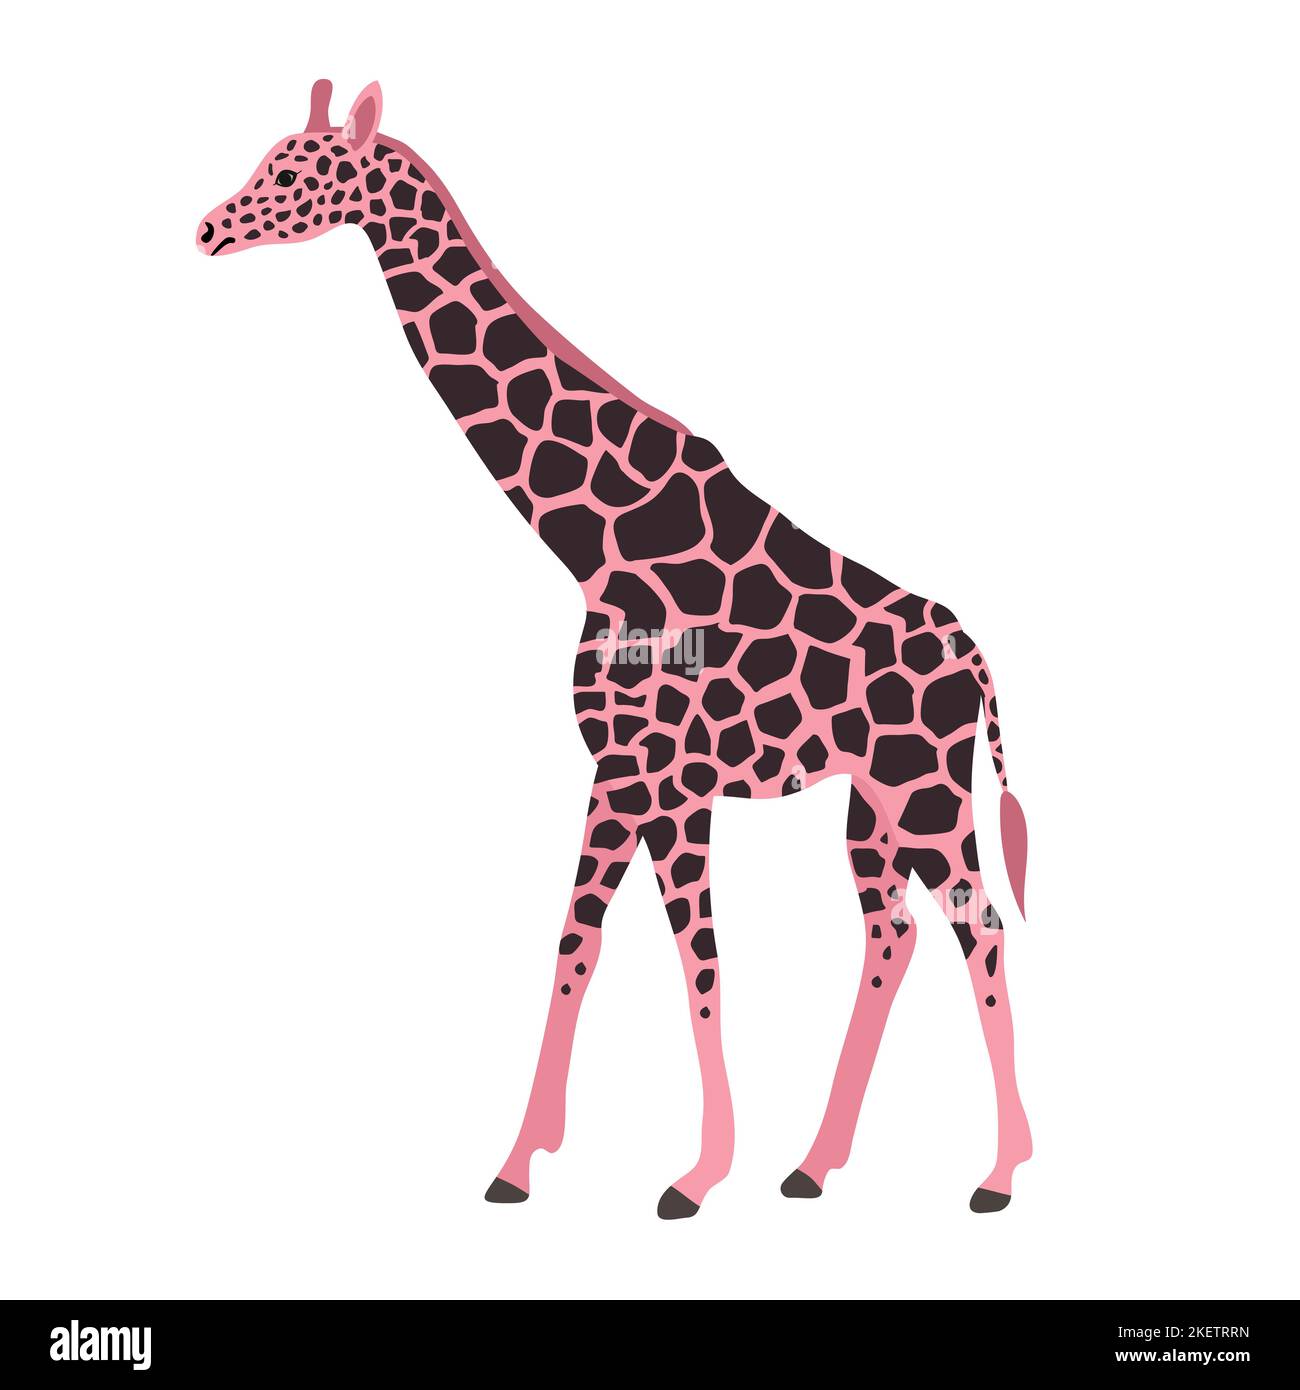 Girafe rose à dessin à la main, vectorielle, isolée sur fond blanc Illustration de Vecteur